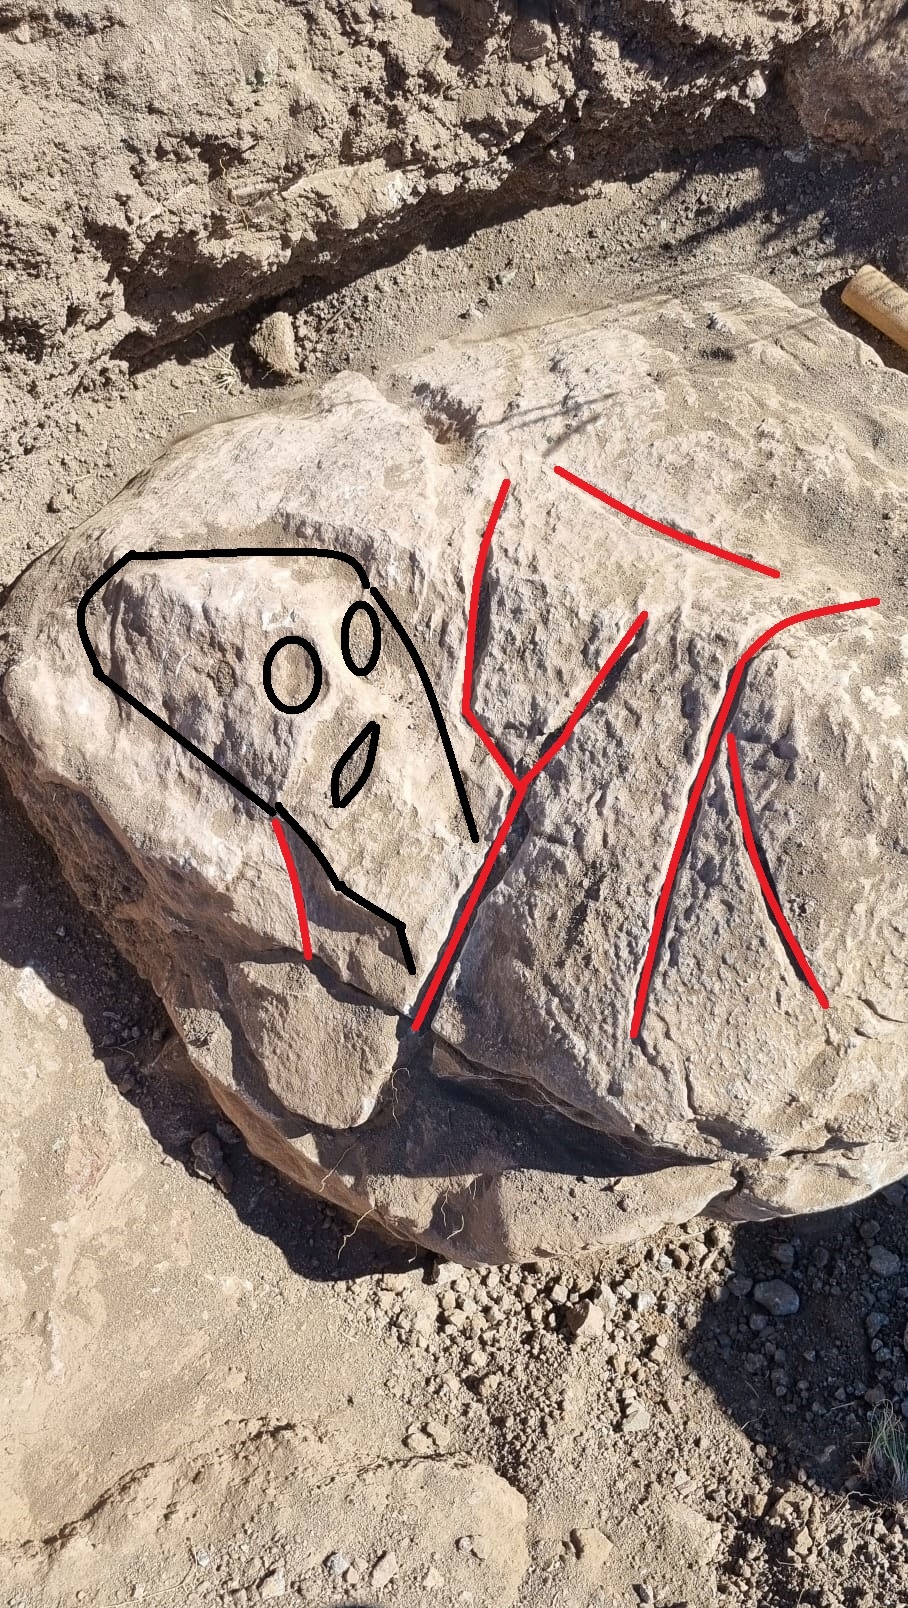  مرحبًا ، هل يمكن لأي شخص أن يشرح لي ما تعنيه الحروف على هذا الحجر y ومقلوب v. تم العثور على هذا الحجر في مجرى جاف Ccc12